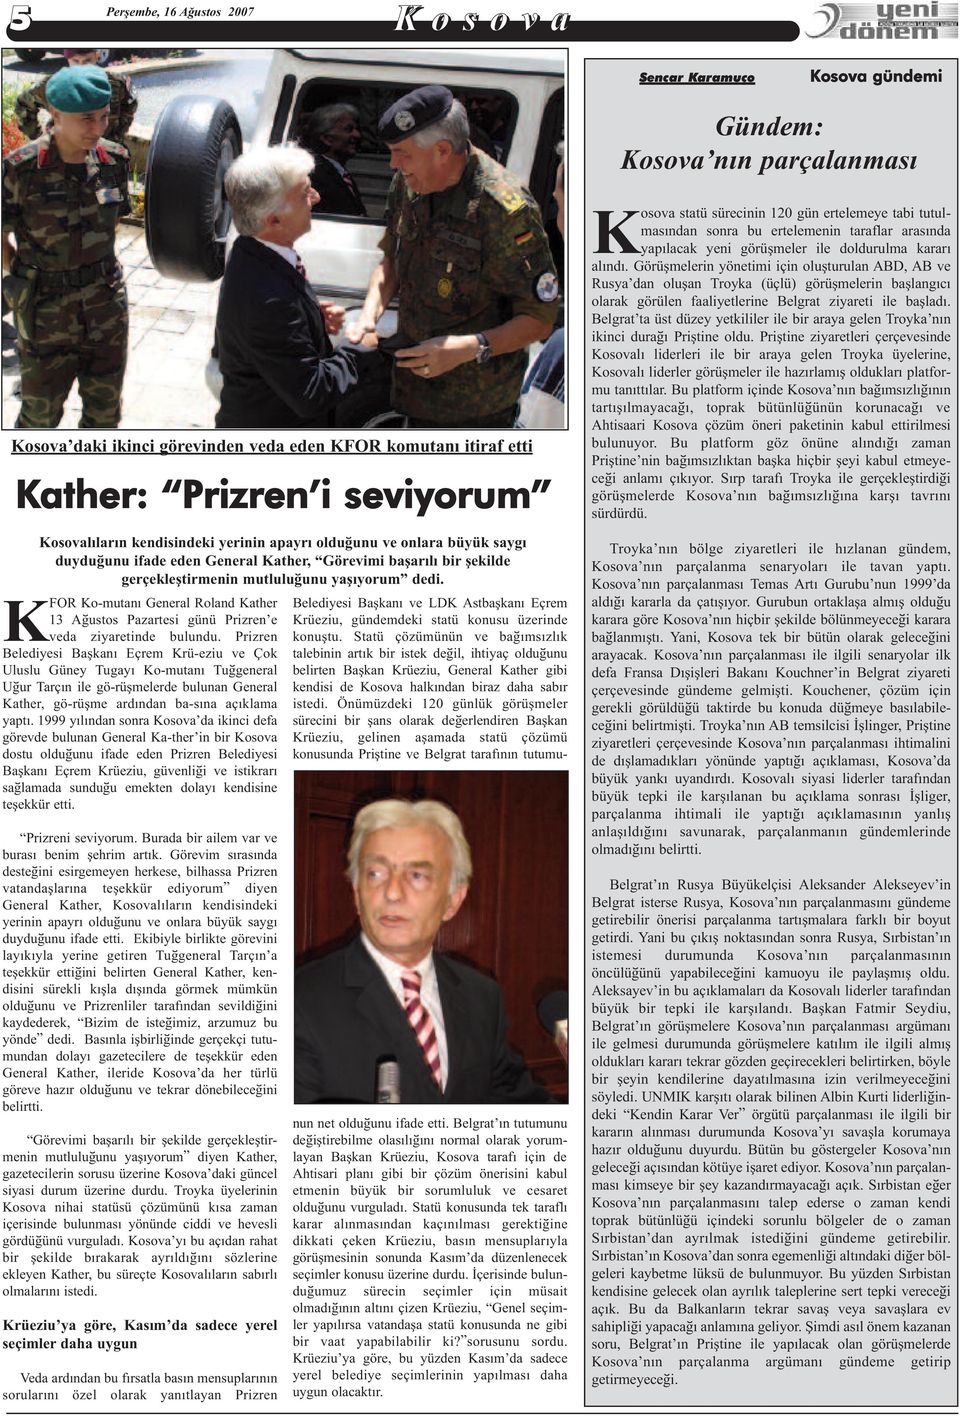 KFOR Ko-mutaný General Roland Kather 13 Aðustos Pazartesi günü Prizren e veda ziyaretinde bulundu.